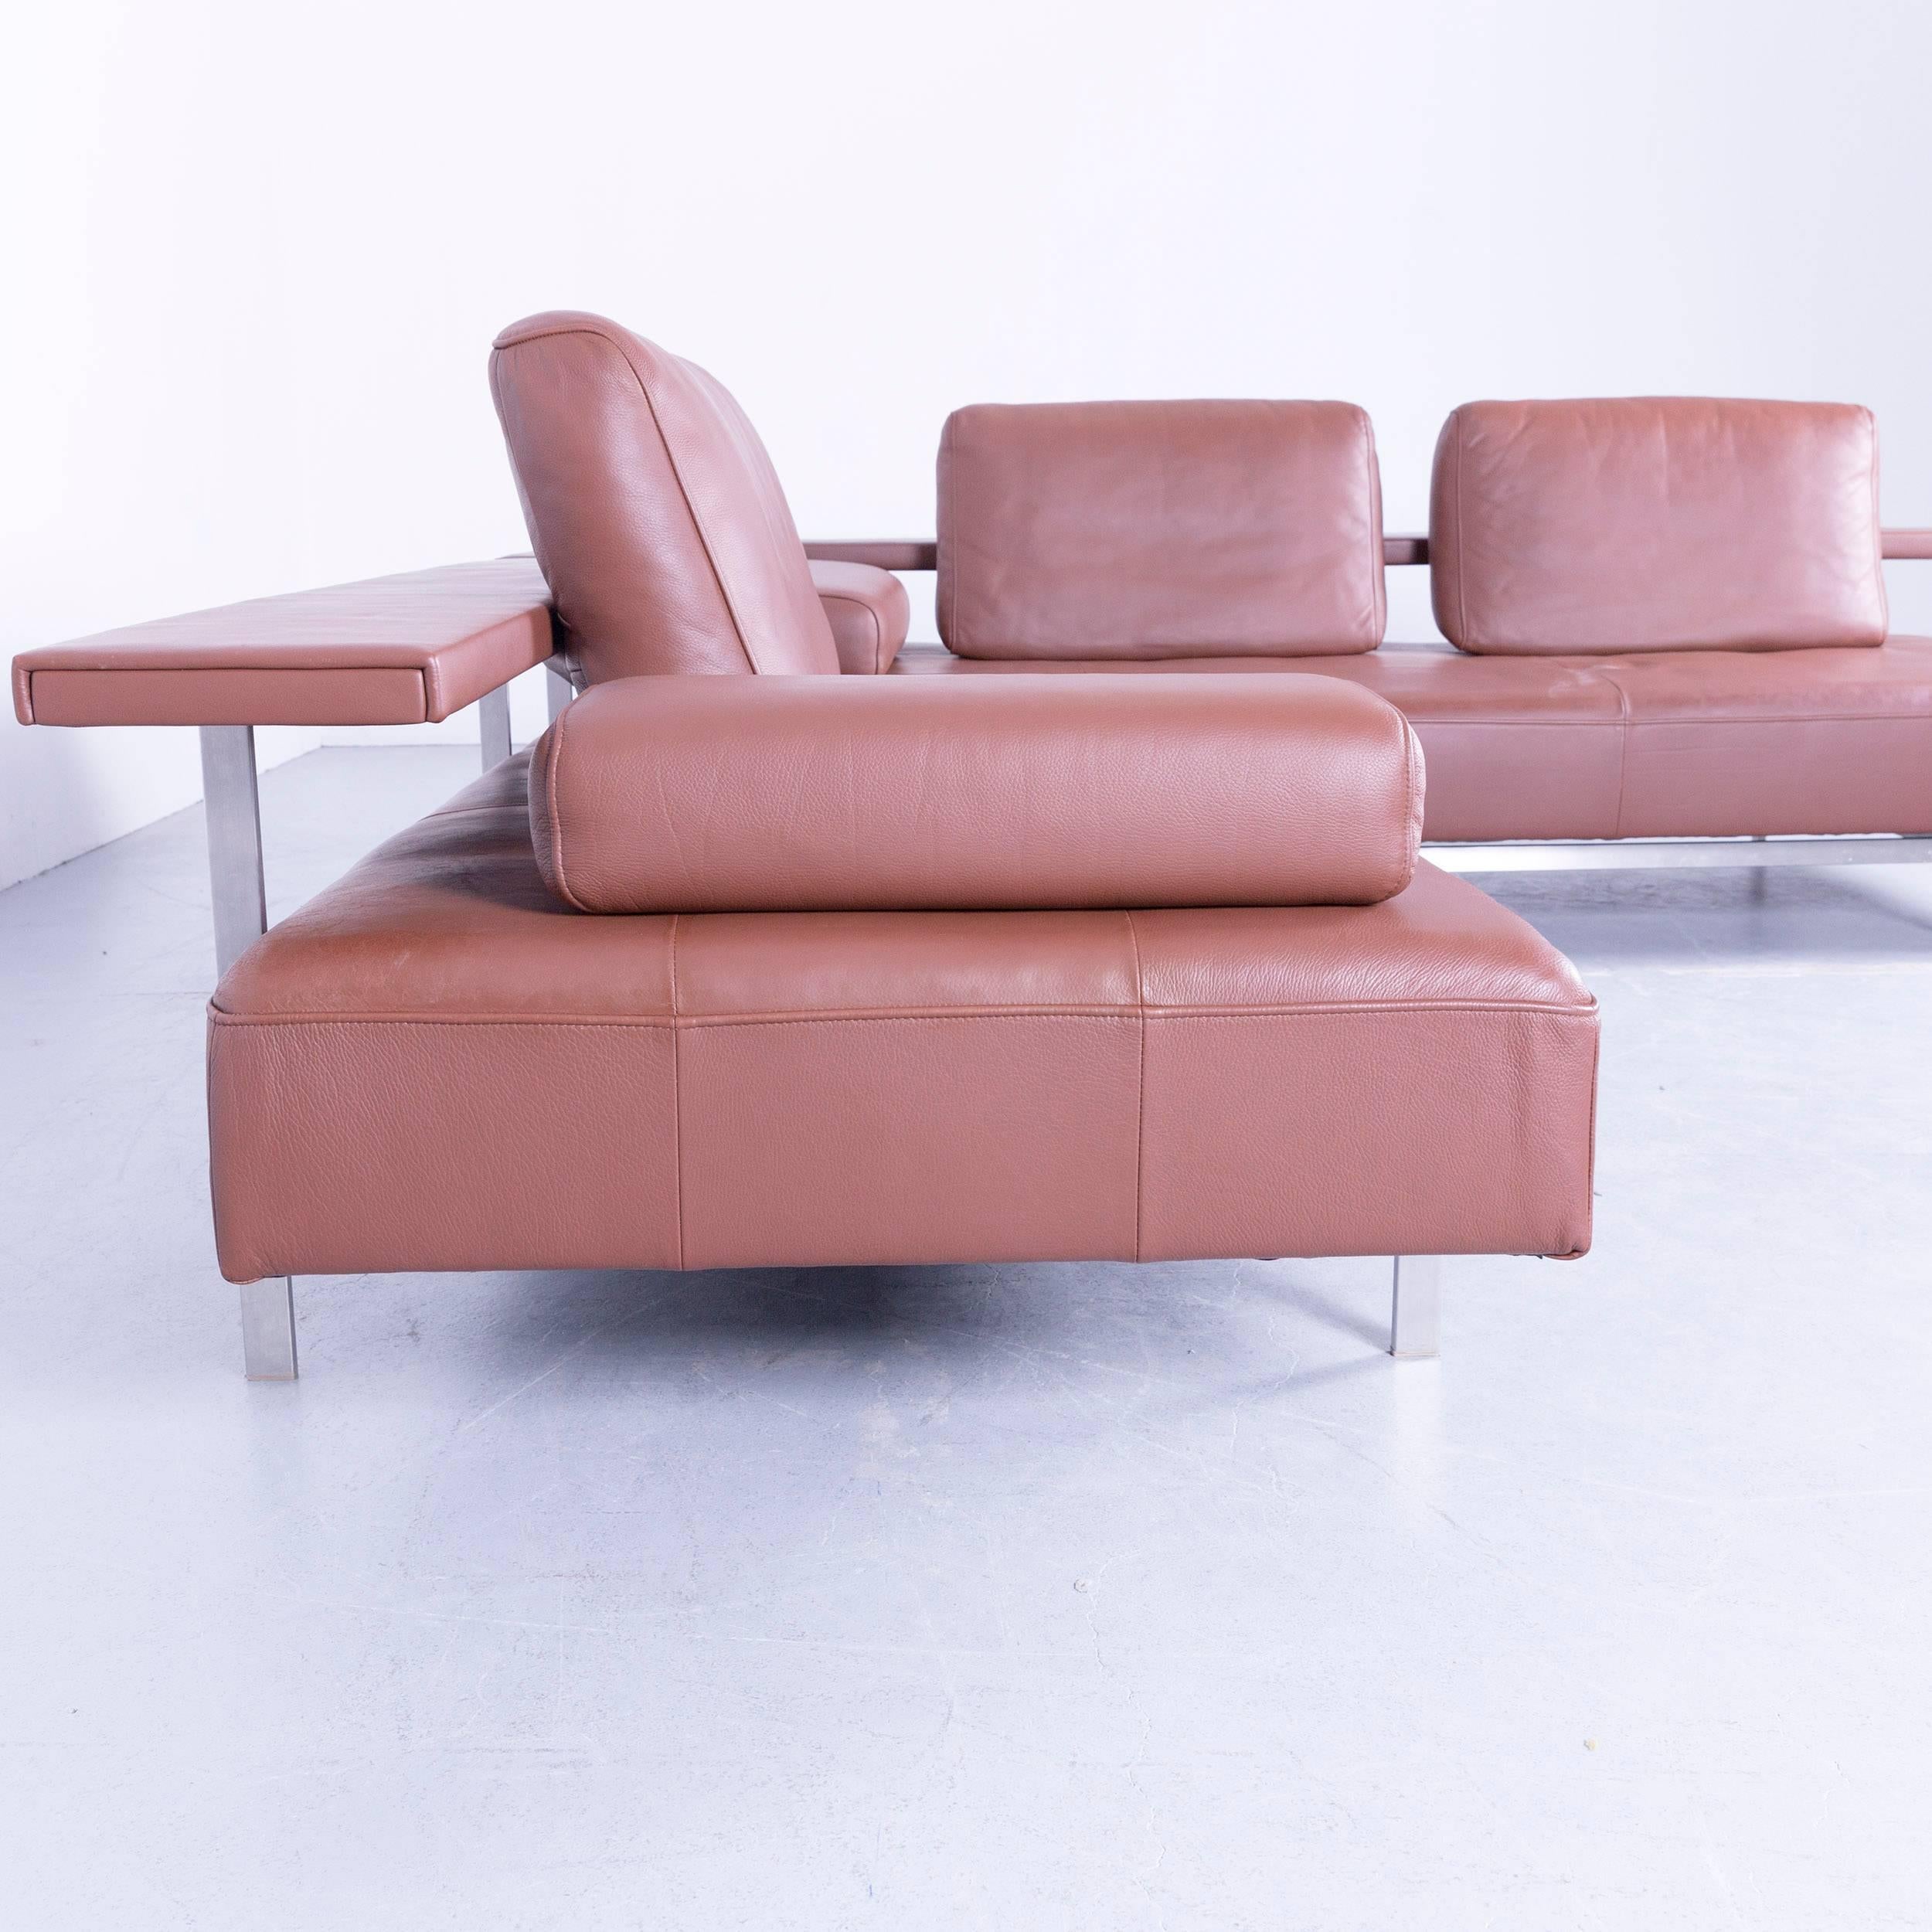 German Rolf Benz Dono Designer Corner Sofa Brown Leather Couch Modern